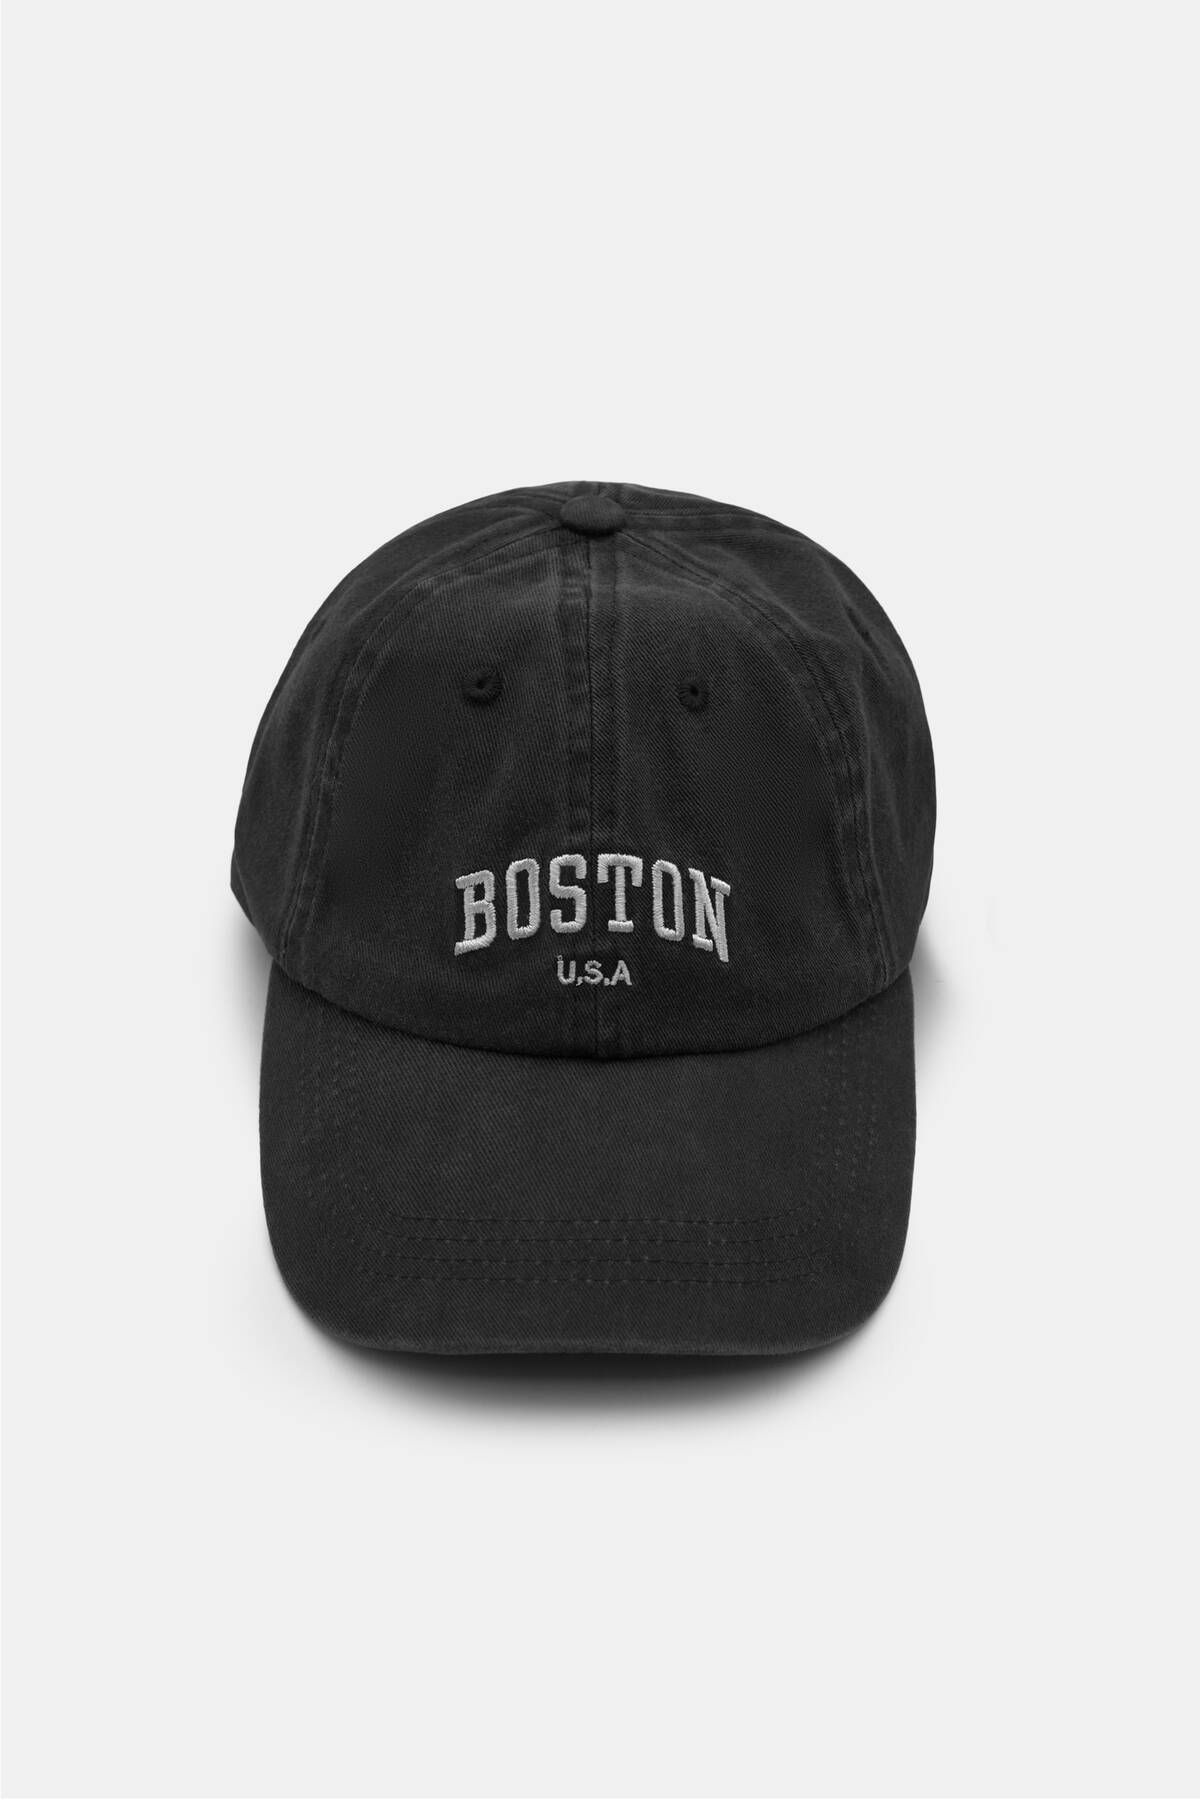 Pull & Bear Boston yazılı şapka